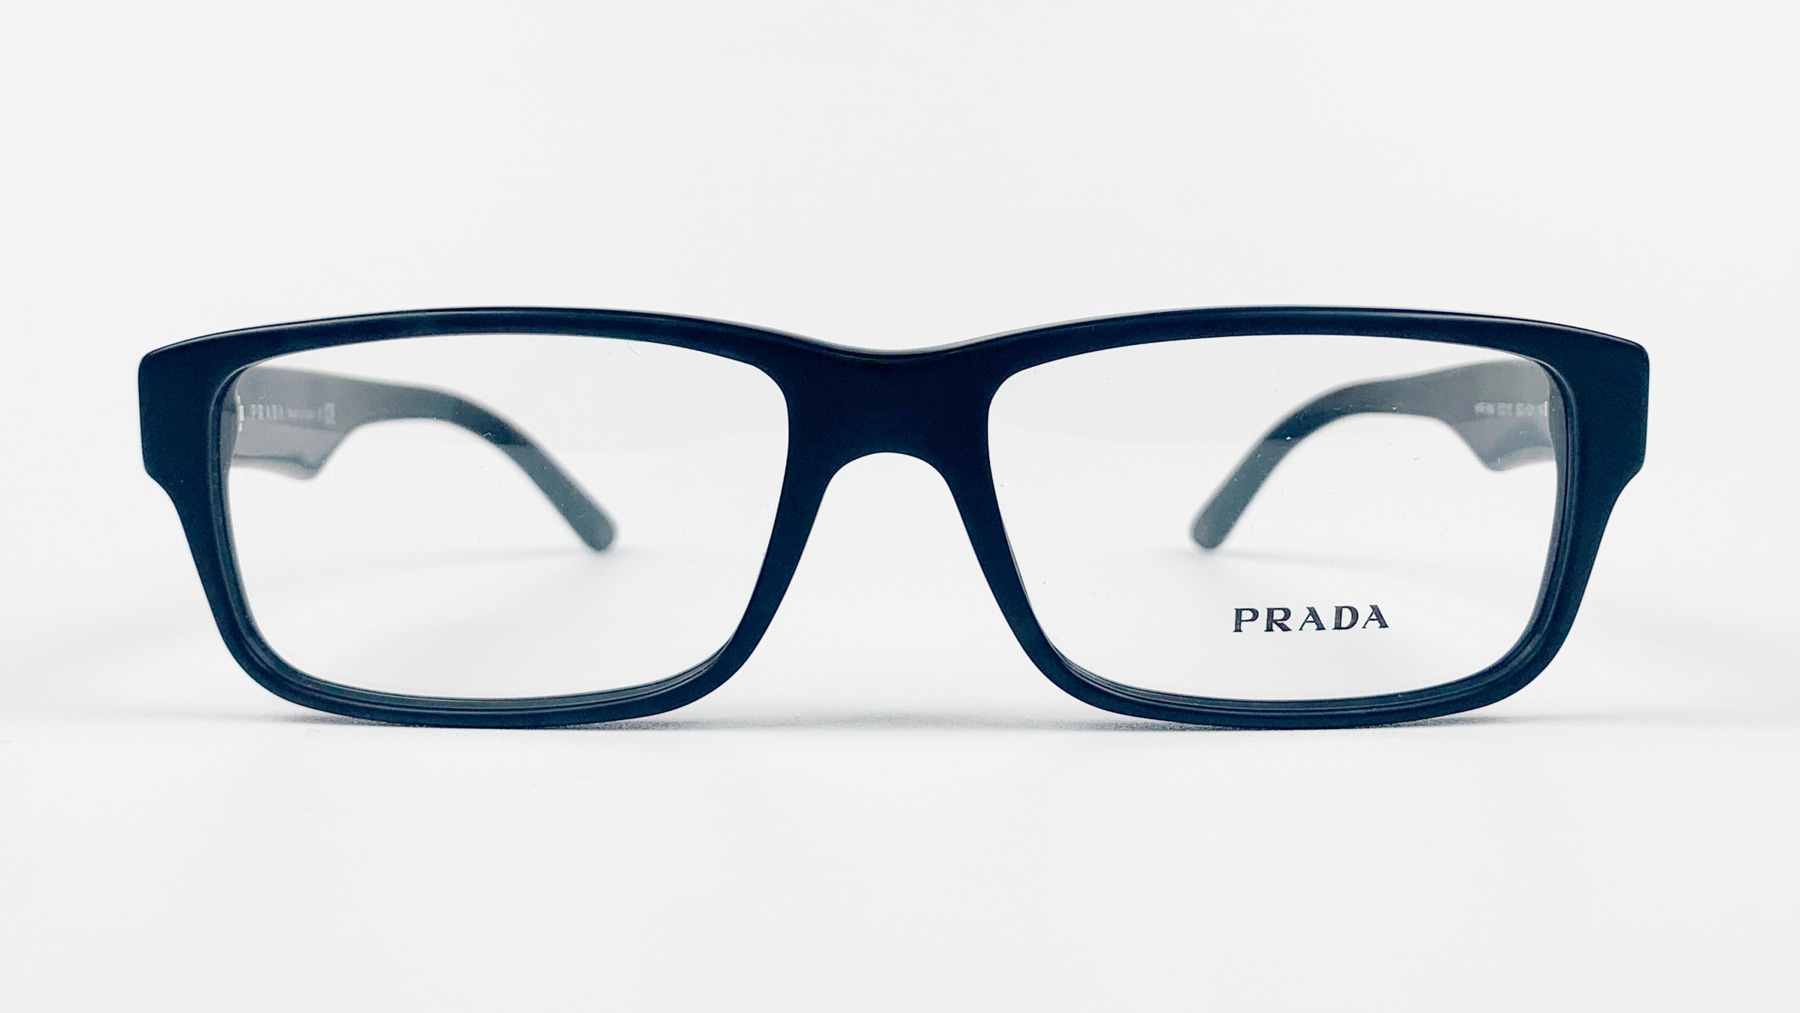 PRADA VPR 16M, Korean glasses, sunglasses, eyeglasses, glasses